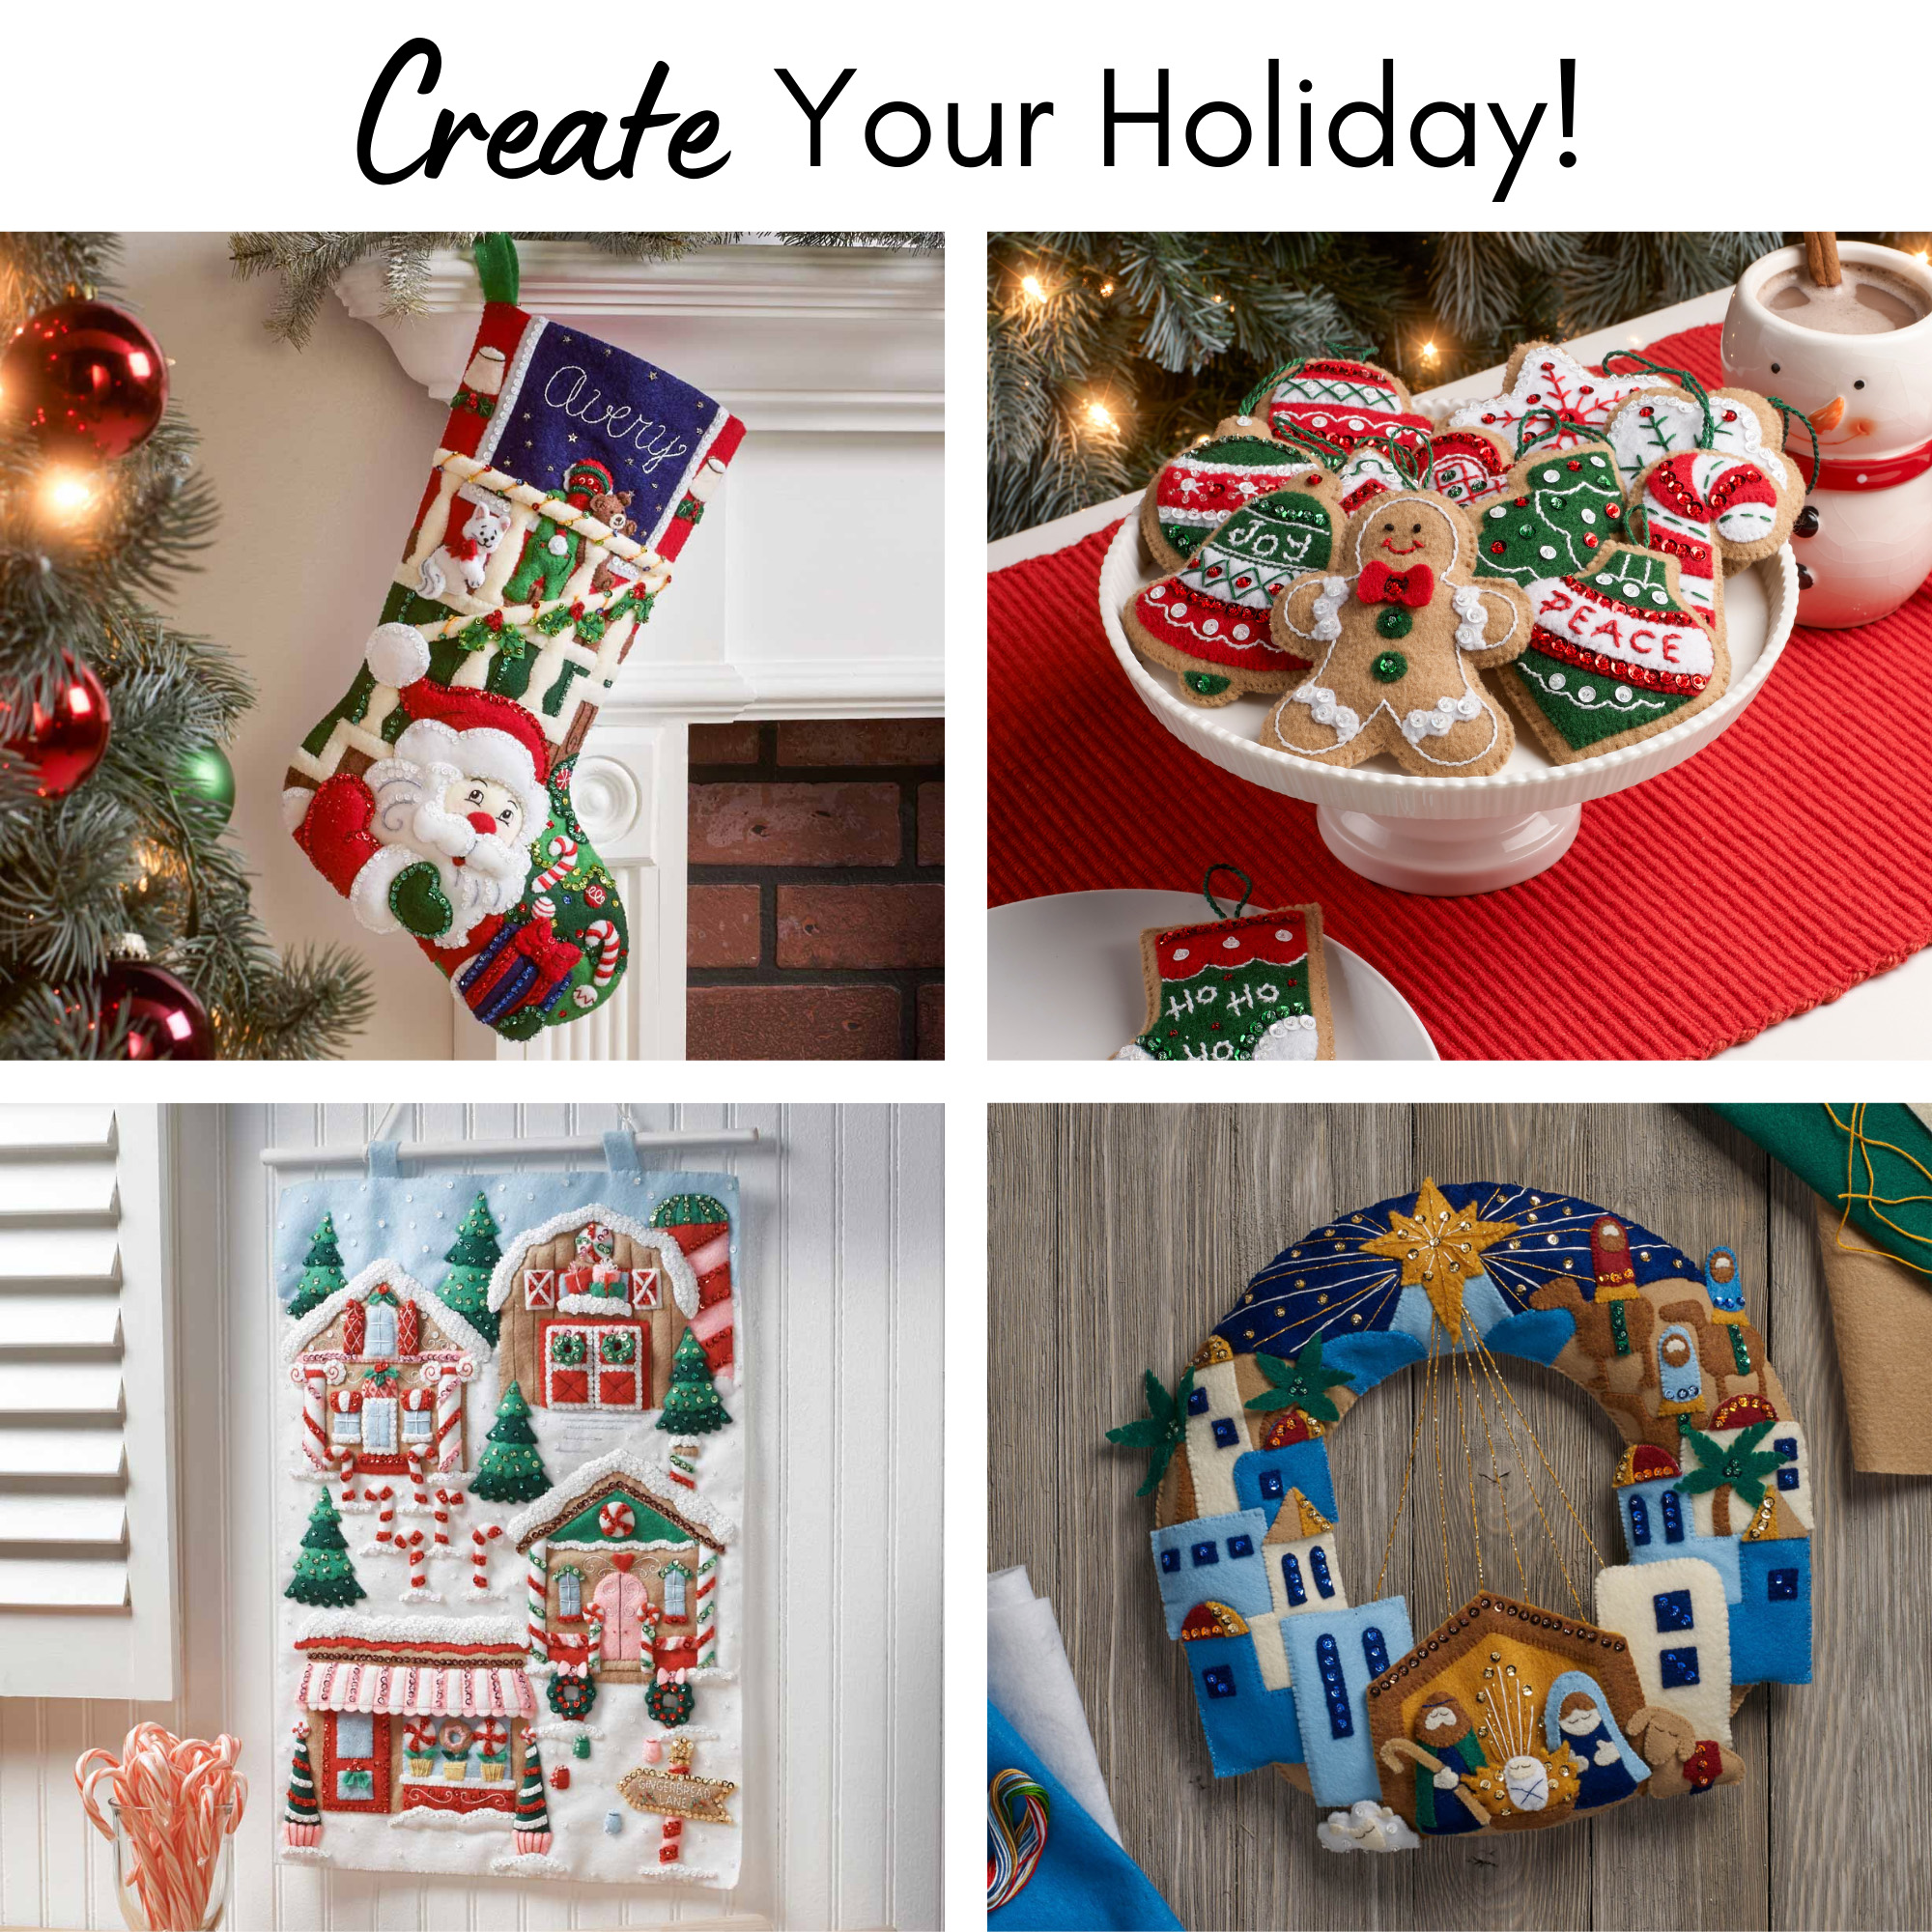 Bucilla ® Seasonal - Felt - Ornament Kits - Christmas Owl - 89462E